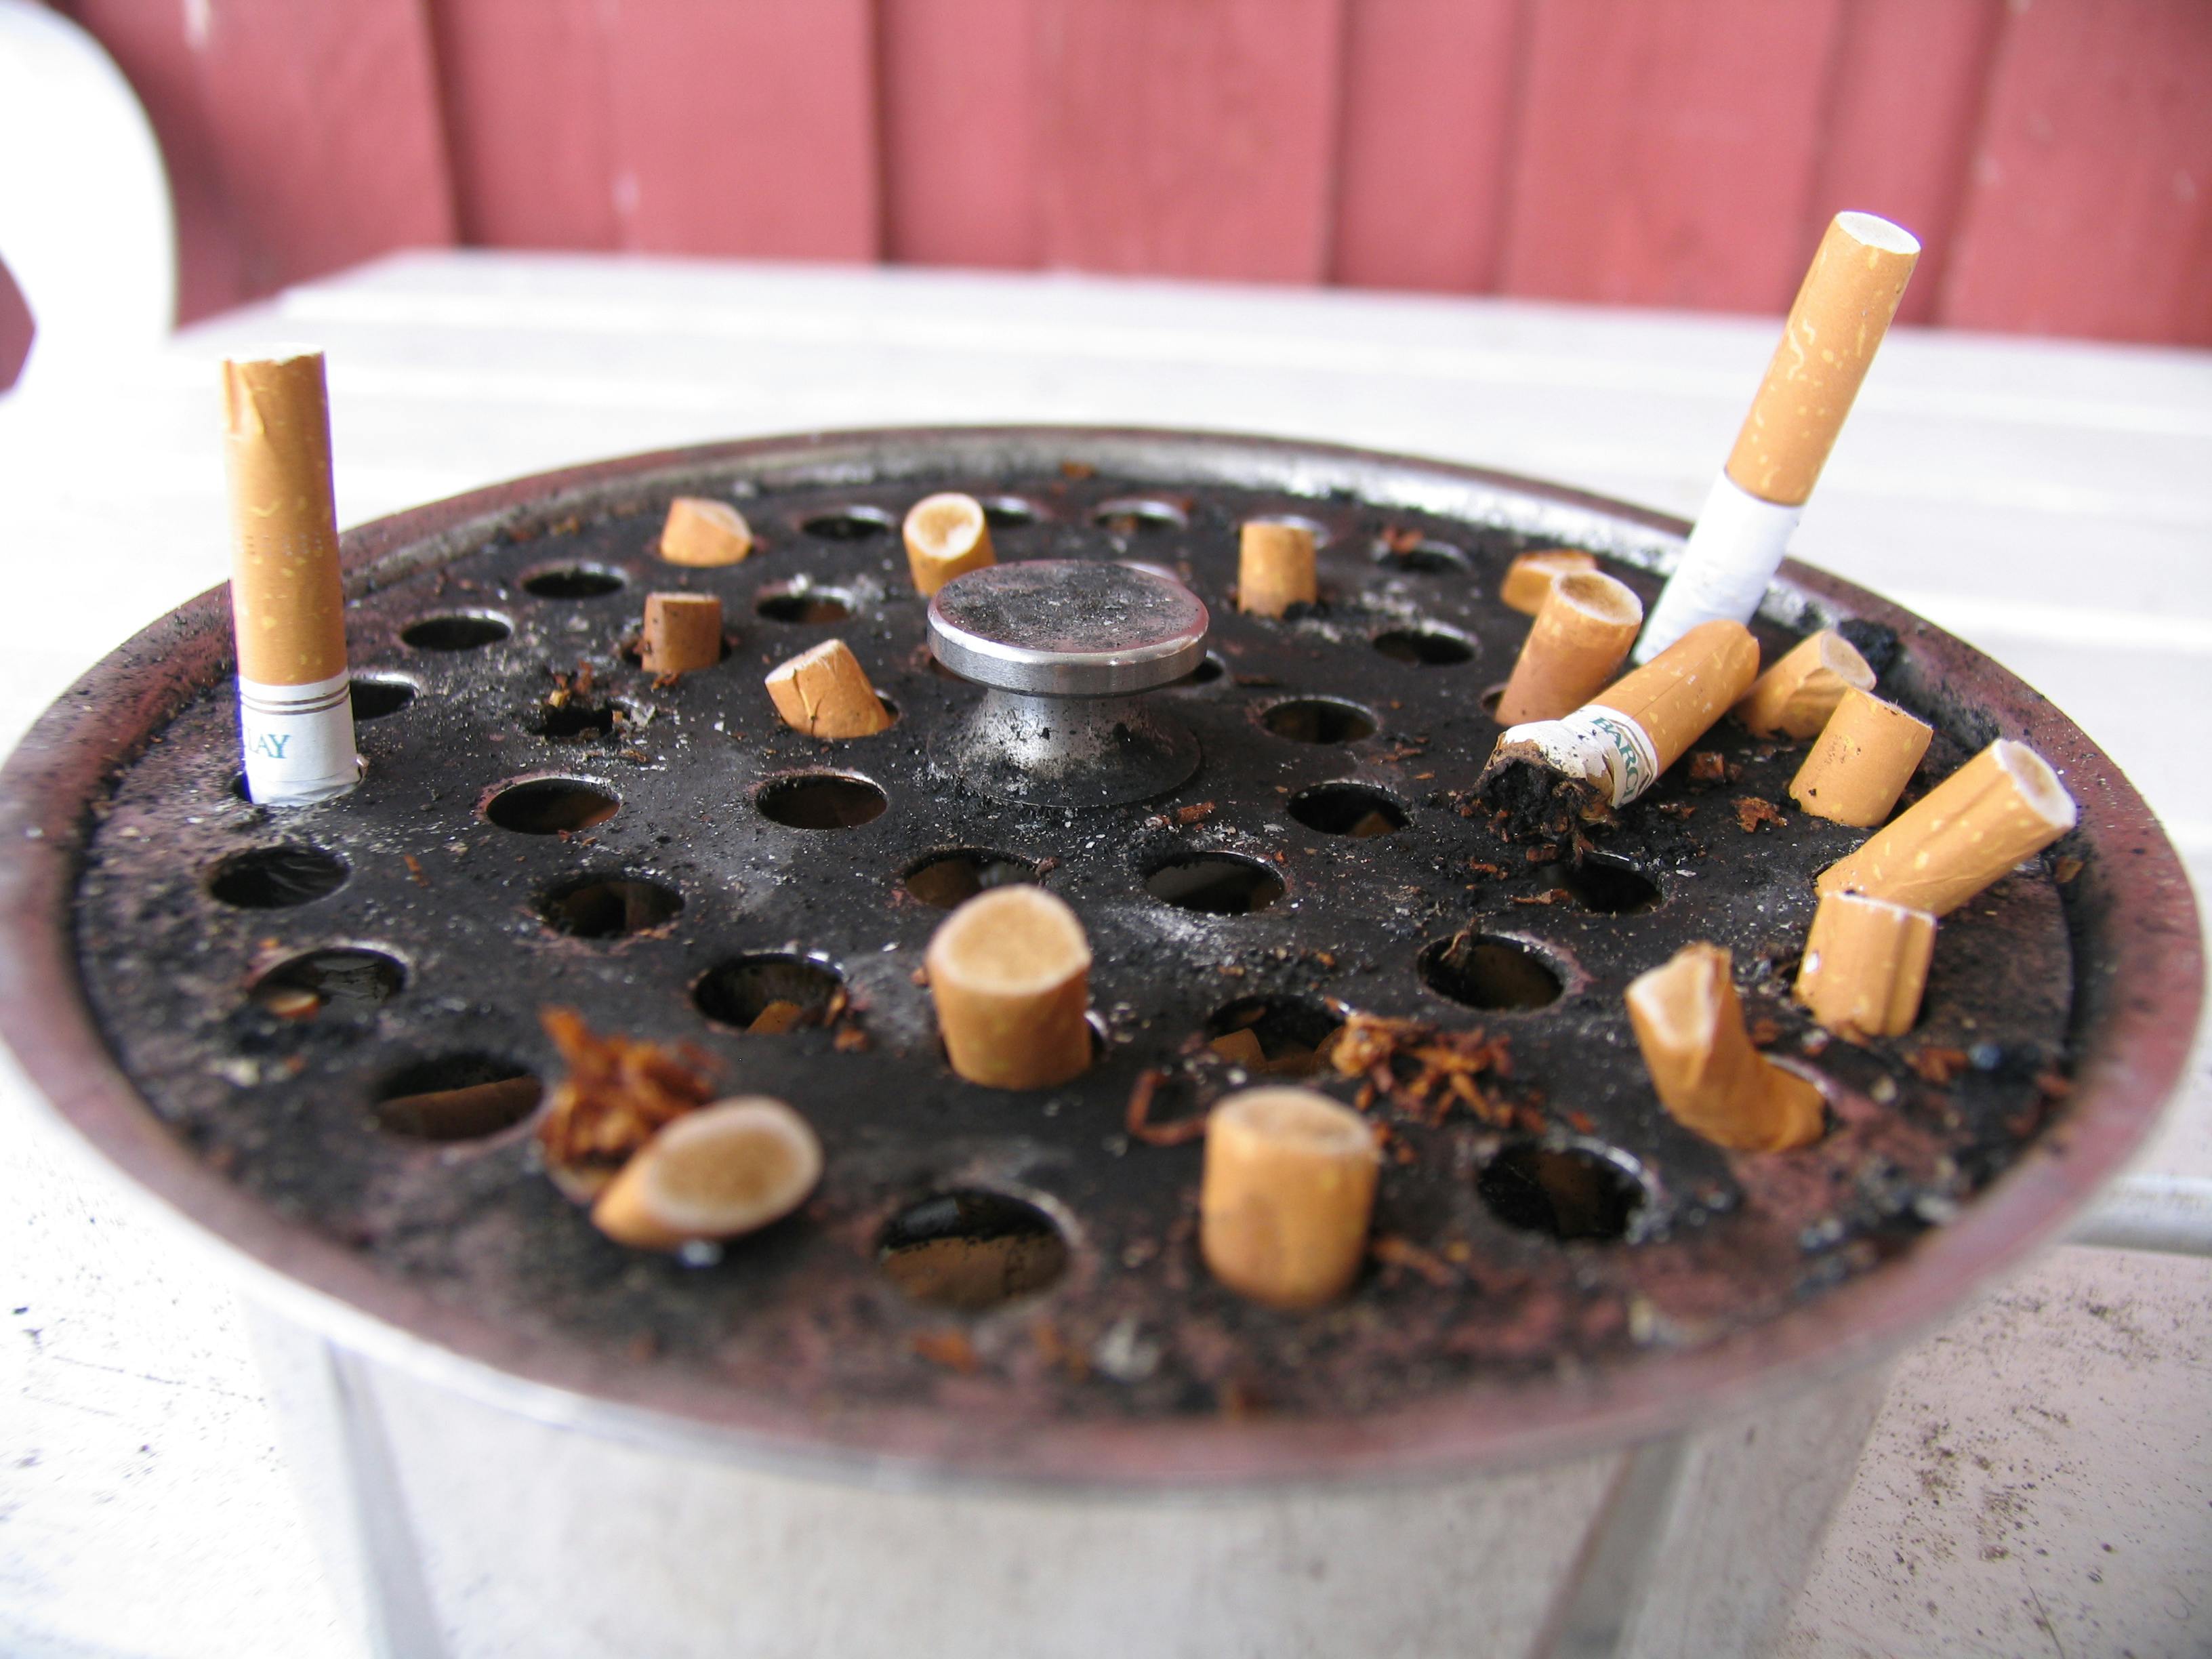 Sidste år købte danskerne næsten en milliard færre cigaretter end året før. Foto: Jonttu Leskinen CCBY